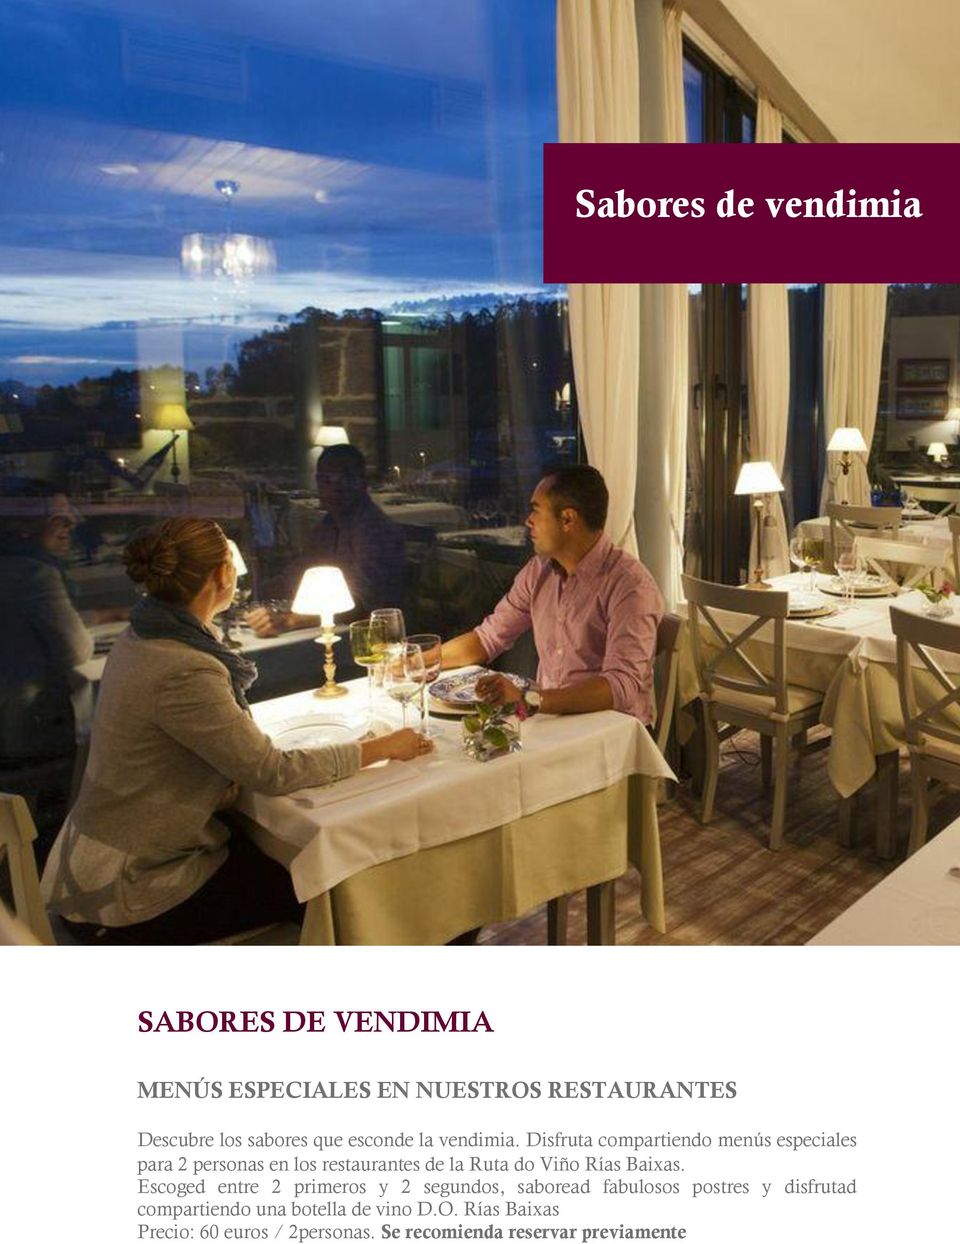 Disfruta compartiendo menús especiales para 2 personas en los restaurantes de la Ruta do Viño Rías Baixas.